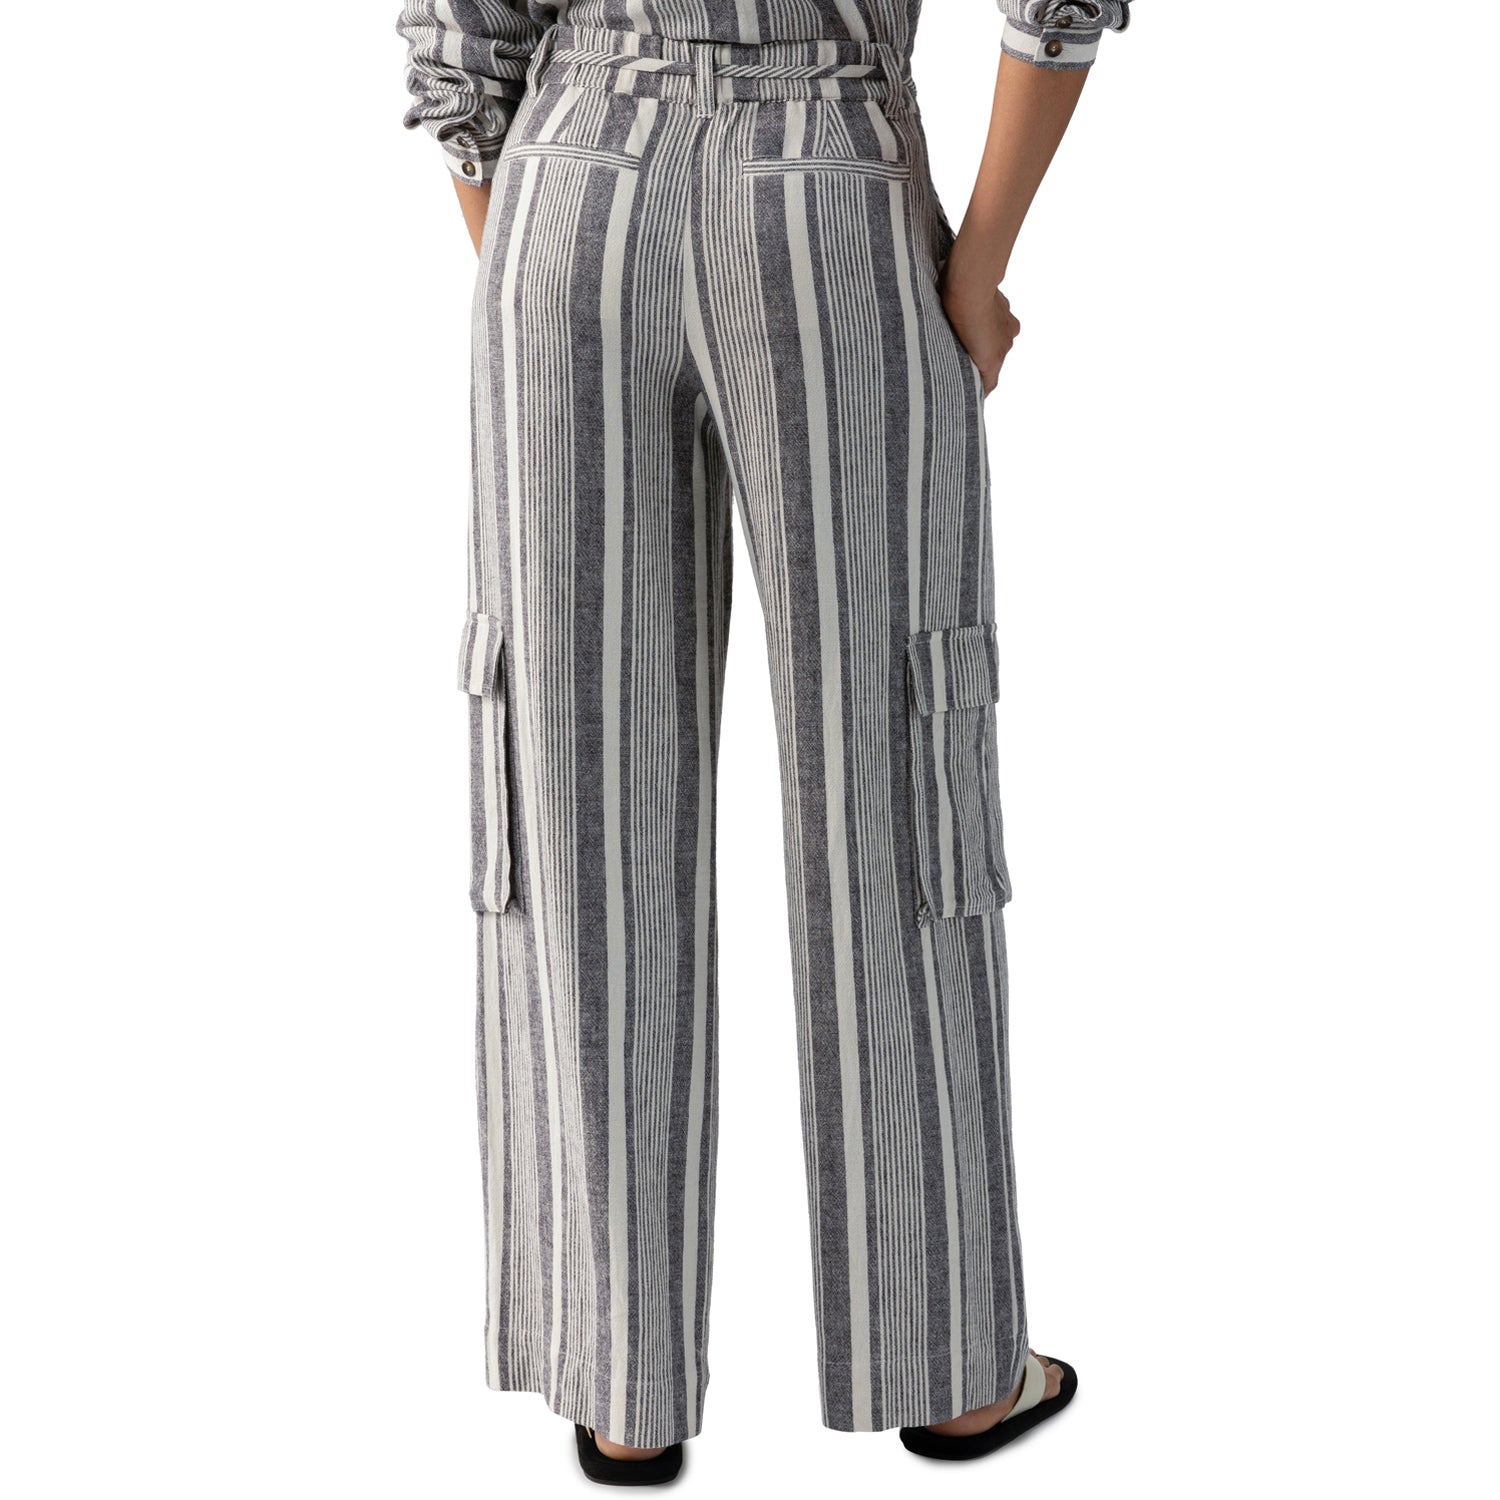 Sanctuary Sunset Linen Pant - Varigated Stripe Clothing - Bottoms - Pants - Casual by Sanctuary | Grace the Boutique